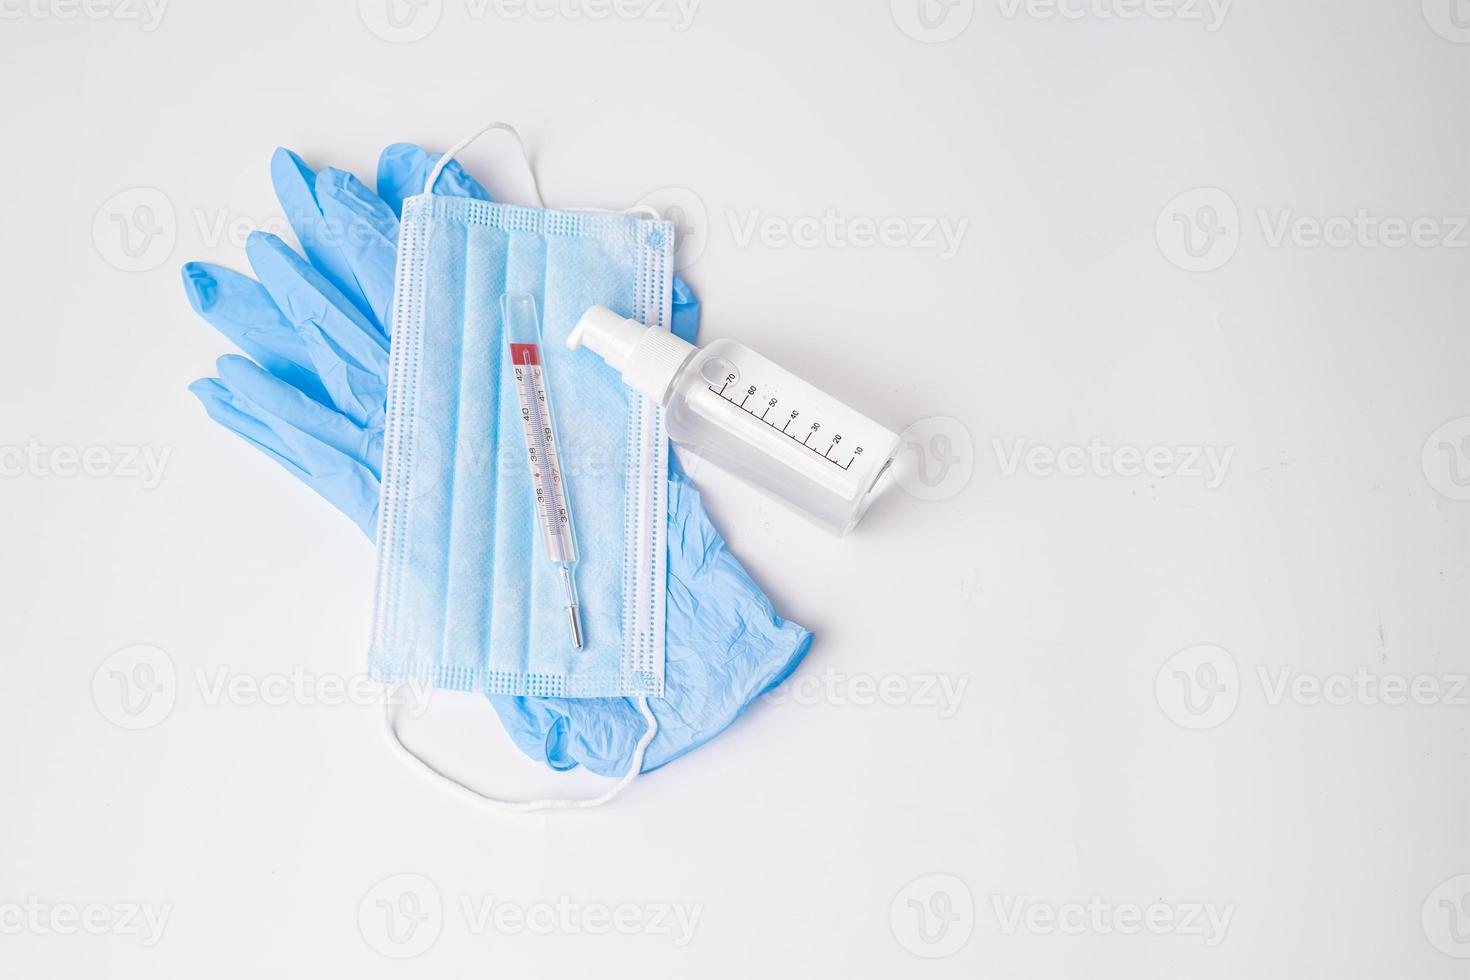 guantes de nitrilo con mascarilla quirúrgica de gel hidroalcohólico y termómetro foto